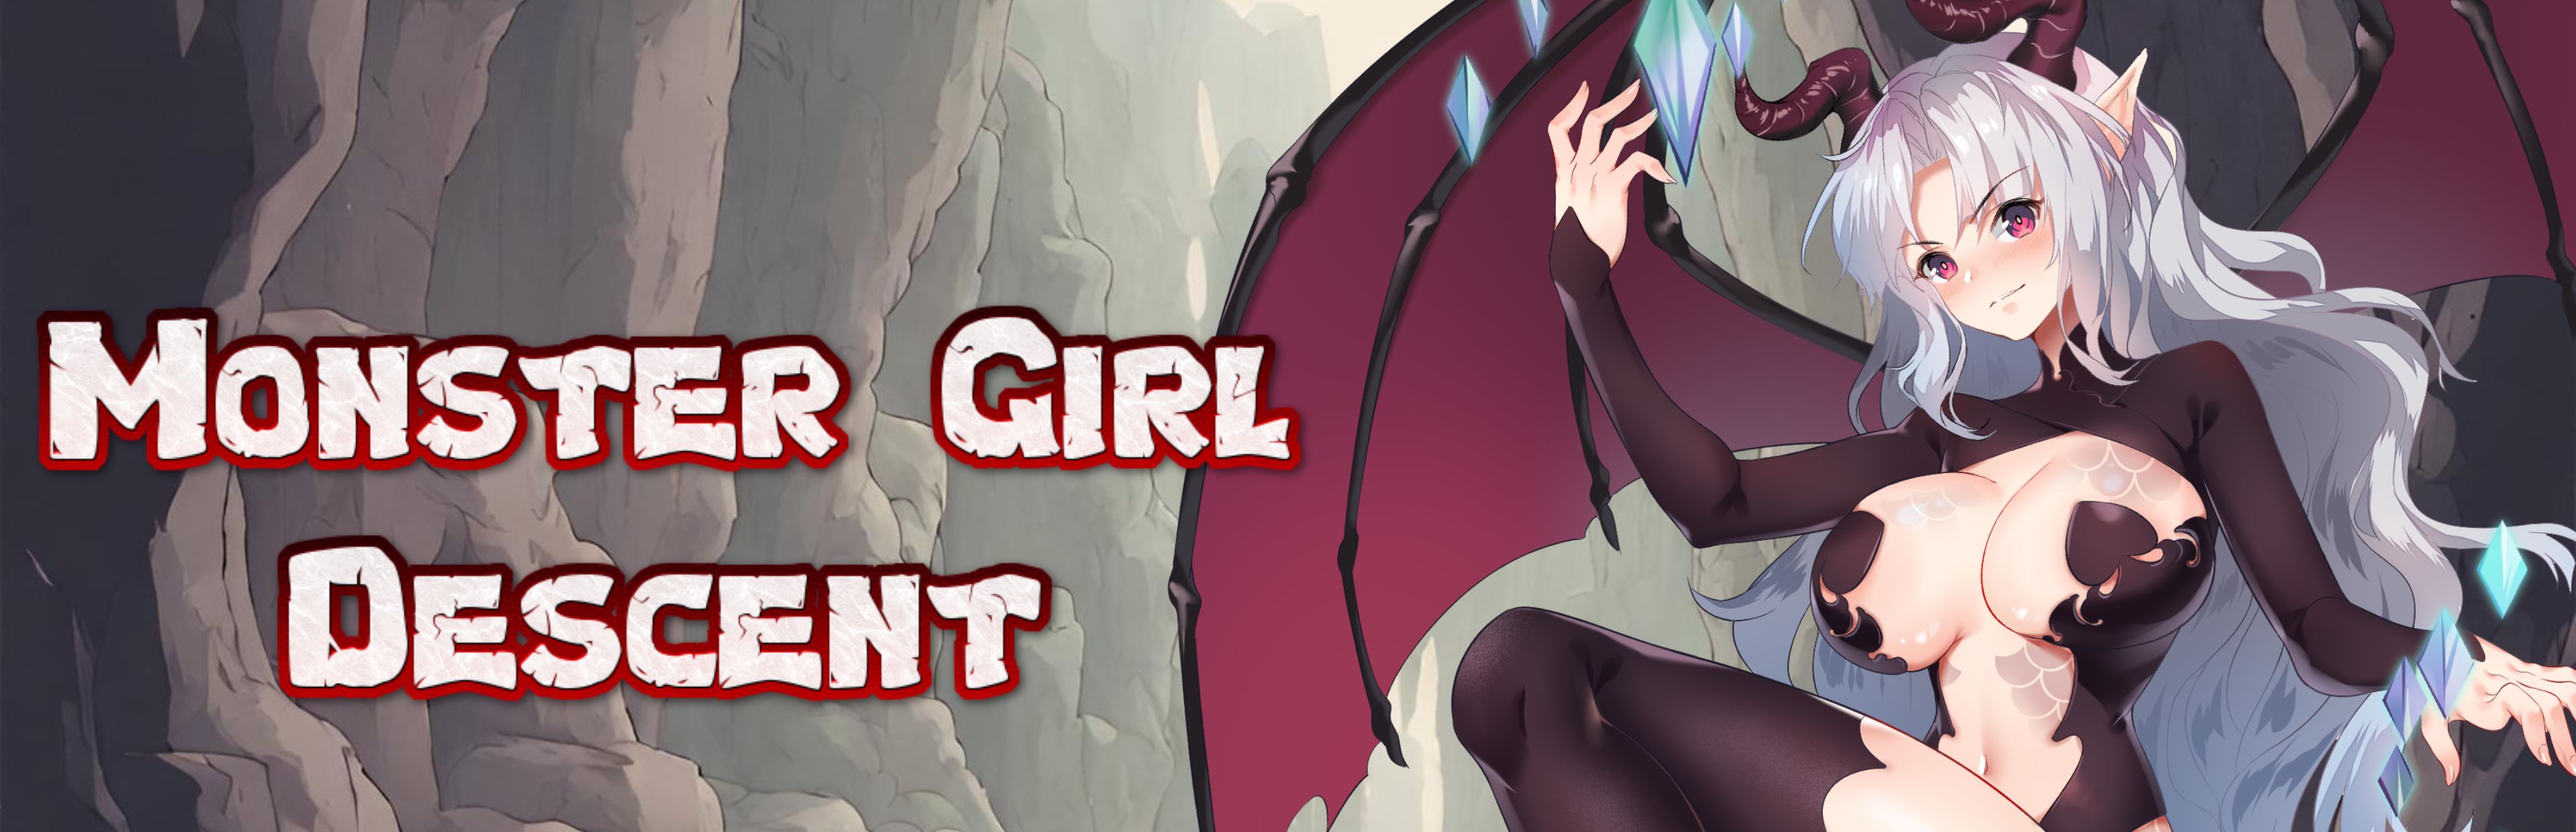 Monster Girl Descent poster